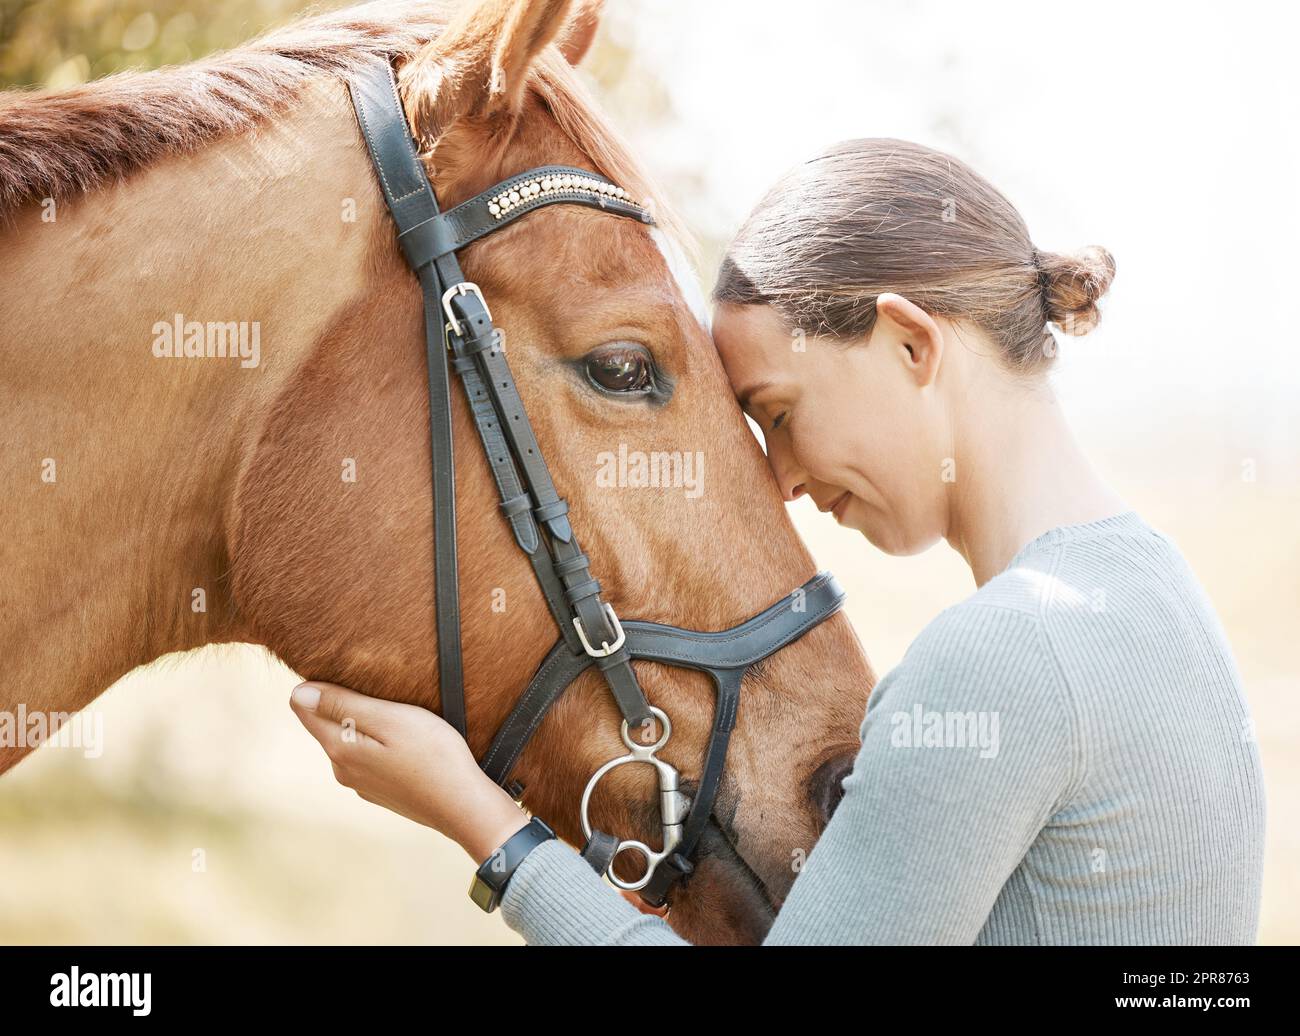 Il se déplace comme s'il entend toujours de la musique. Une jeune femme attrayante debout avec son cheval dans une forêt. Banque D'Images